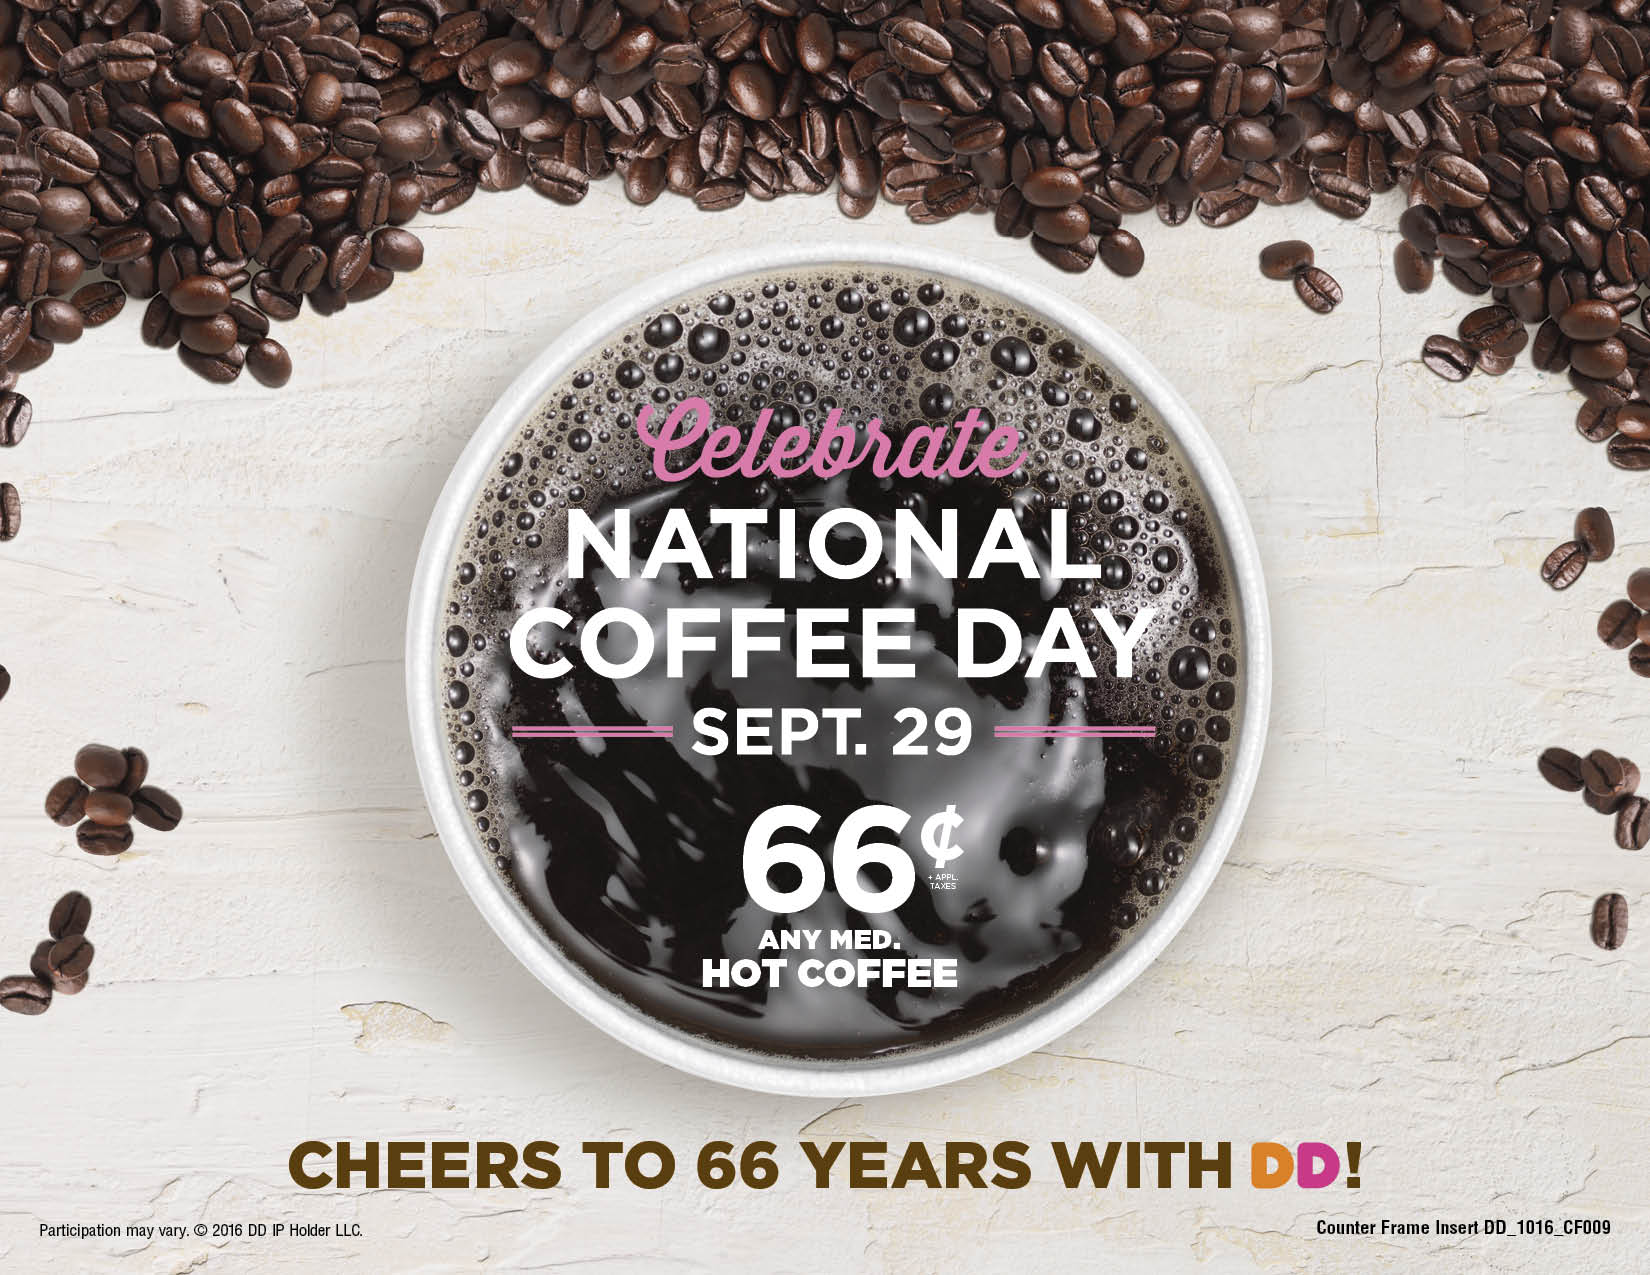 My coffee day. Coffee Day кофейня. Донатс дей кофе. Национальный день кофе (National Coffee Day) — Китай.